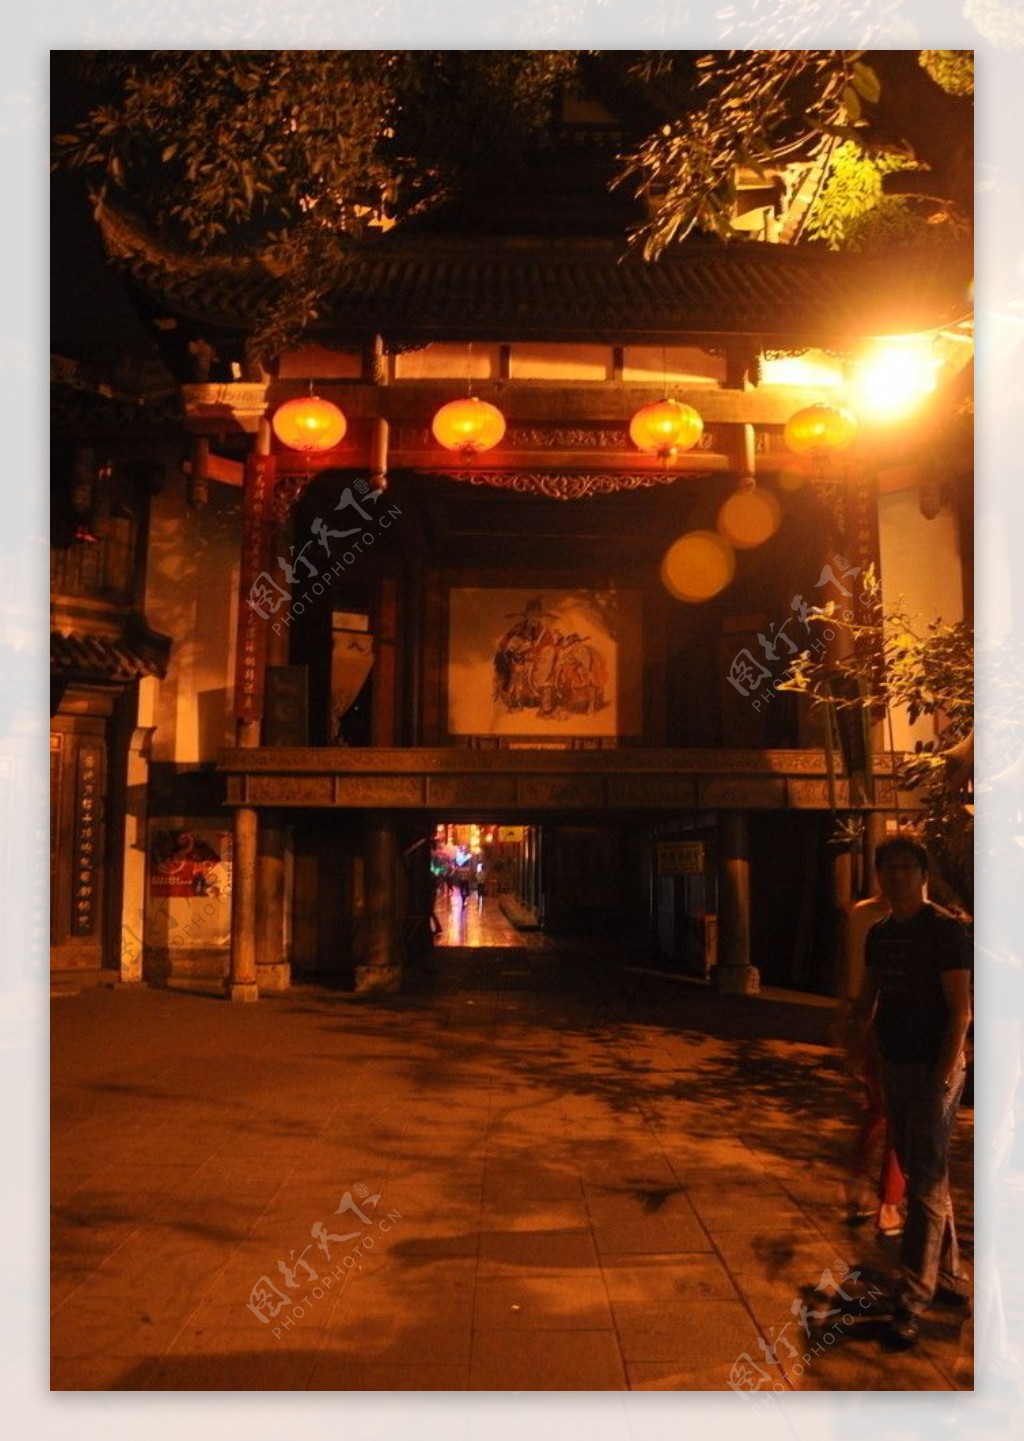 成都锦鲤风情街夜景图片